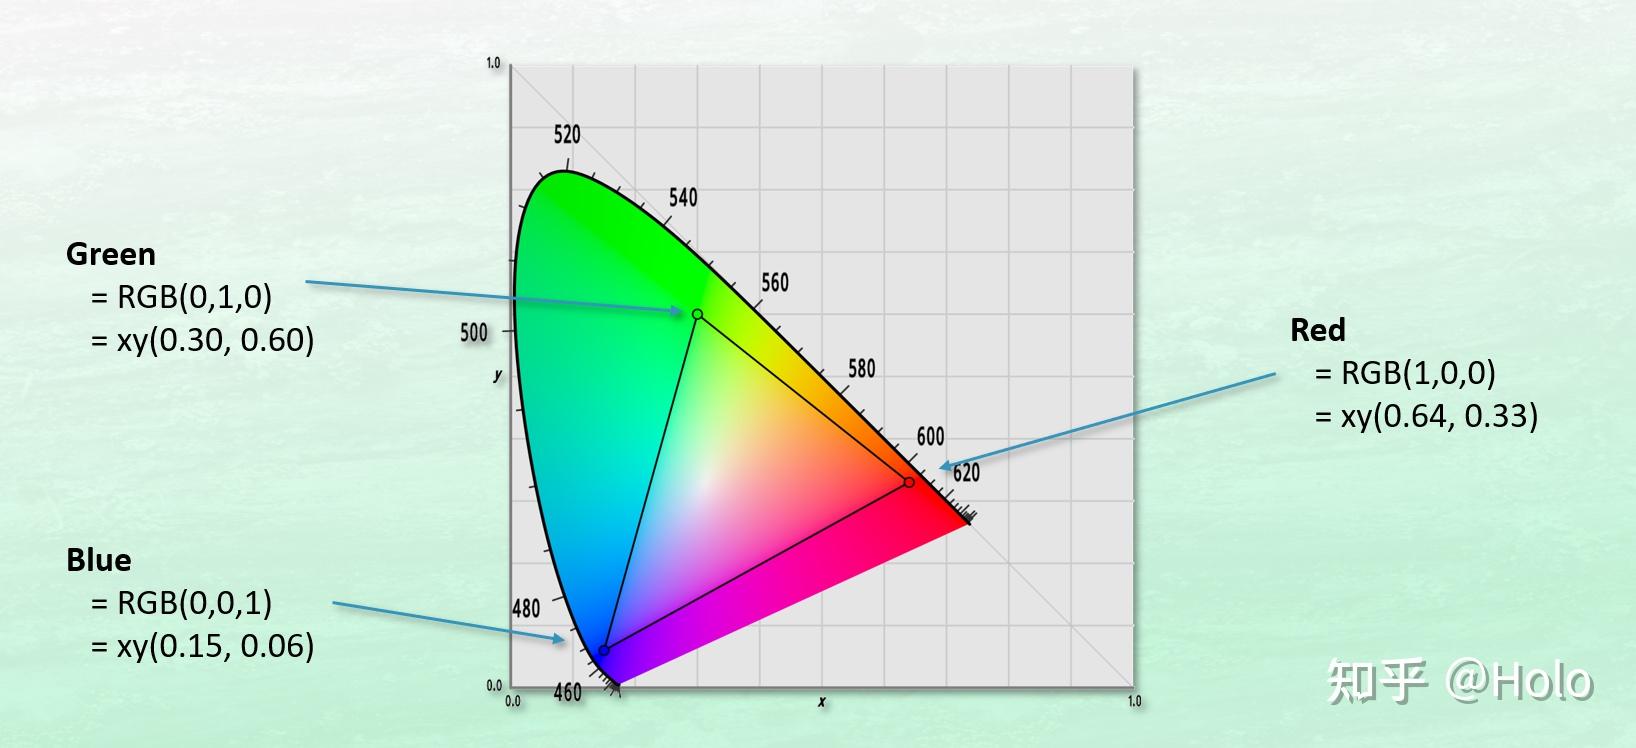 什么是色彩空间,简单来说就是用三原色坐标构成一个三角形,对一个色域